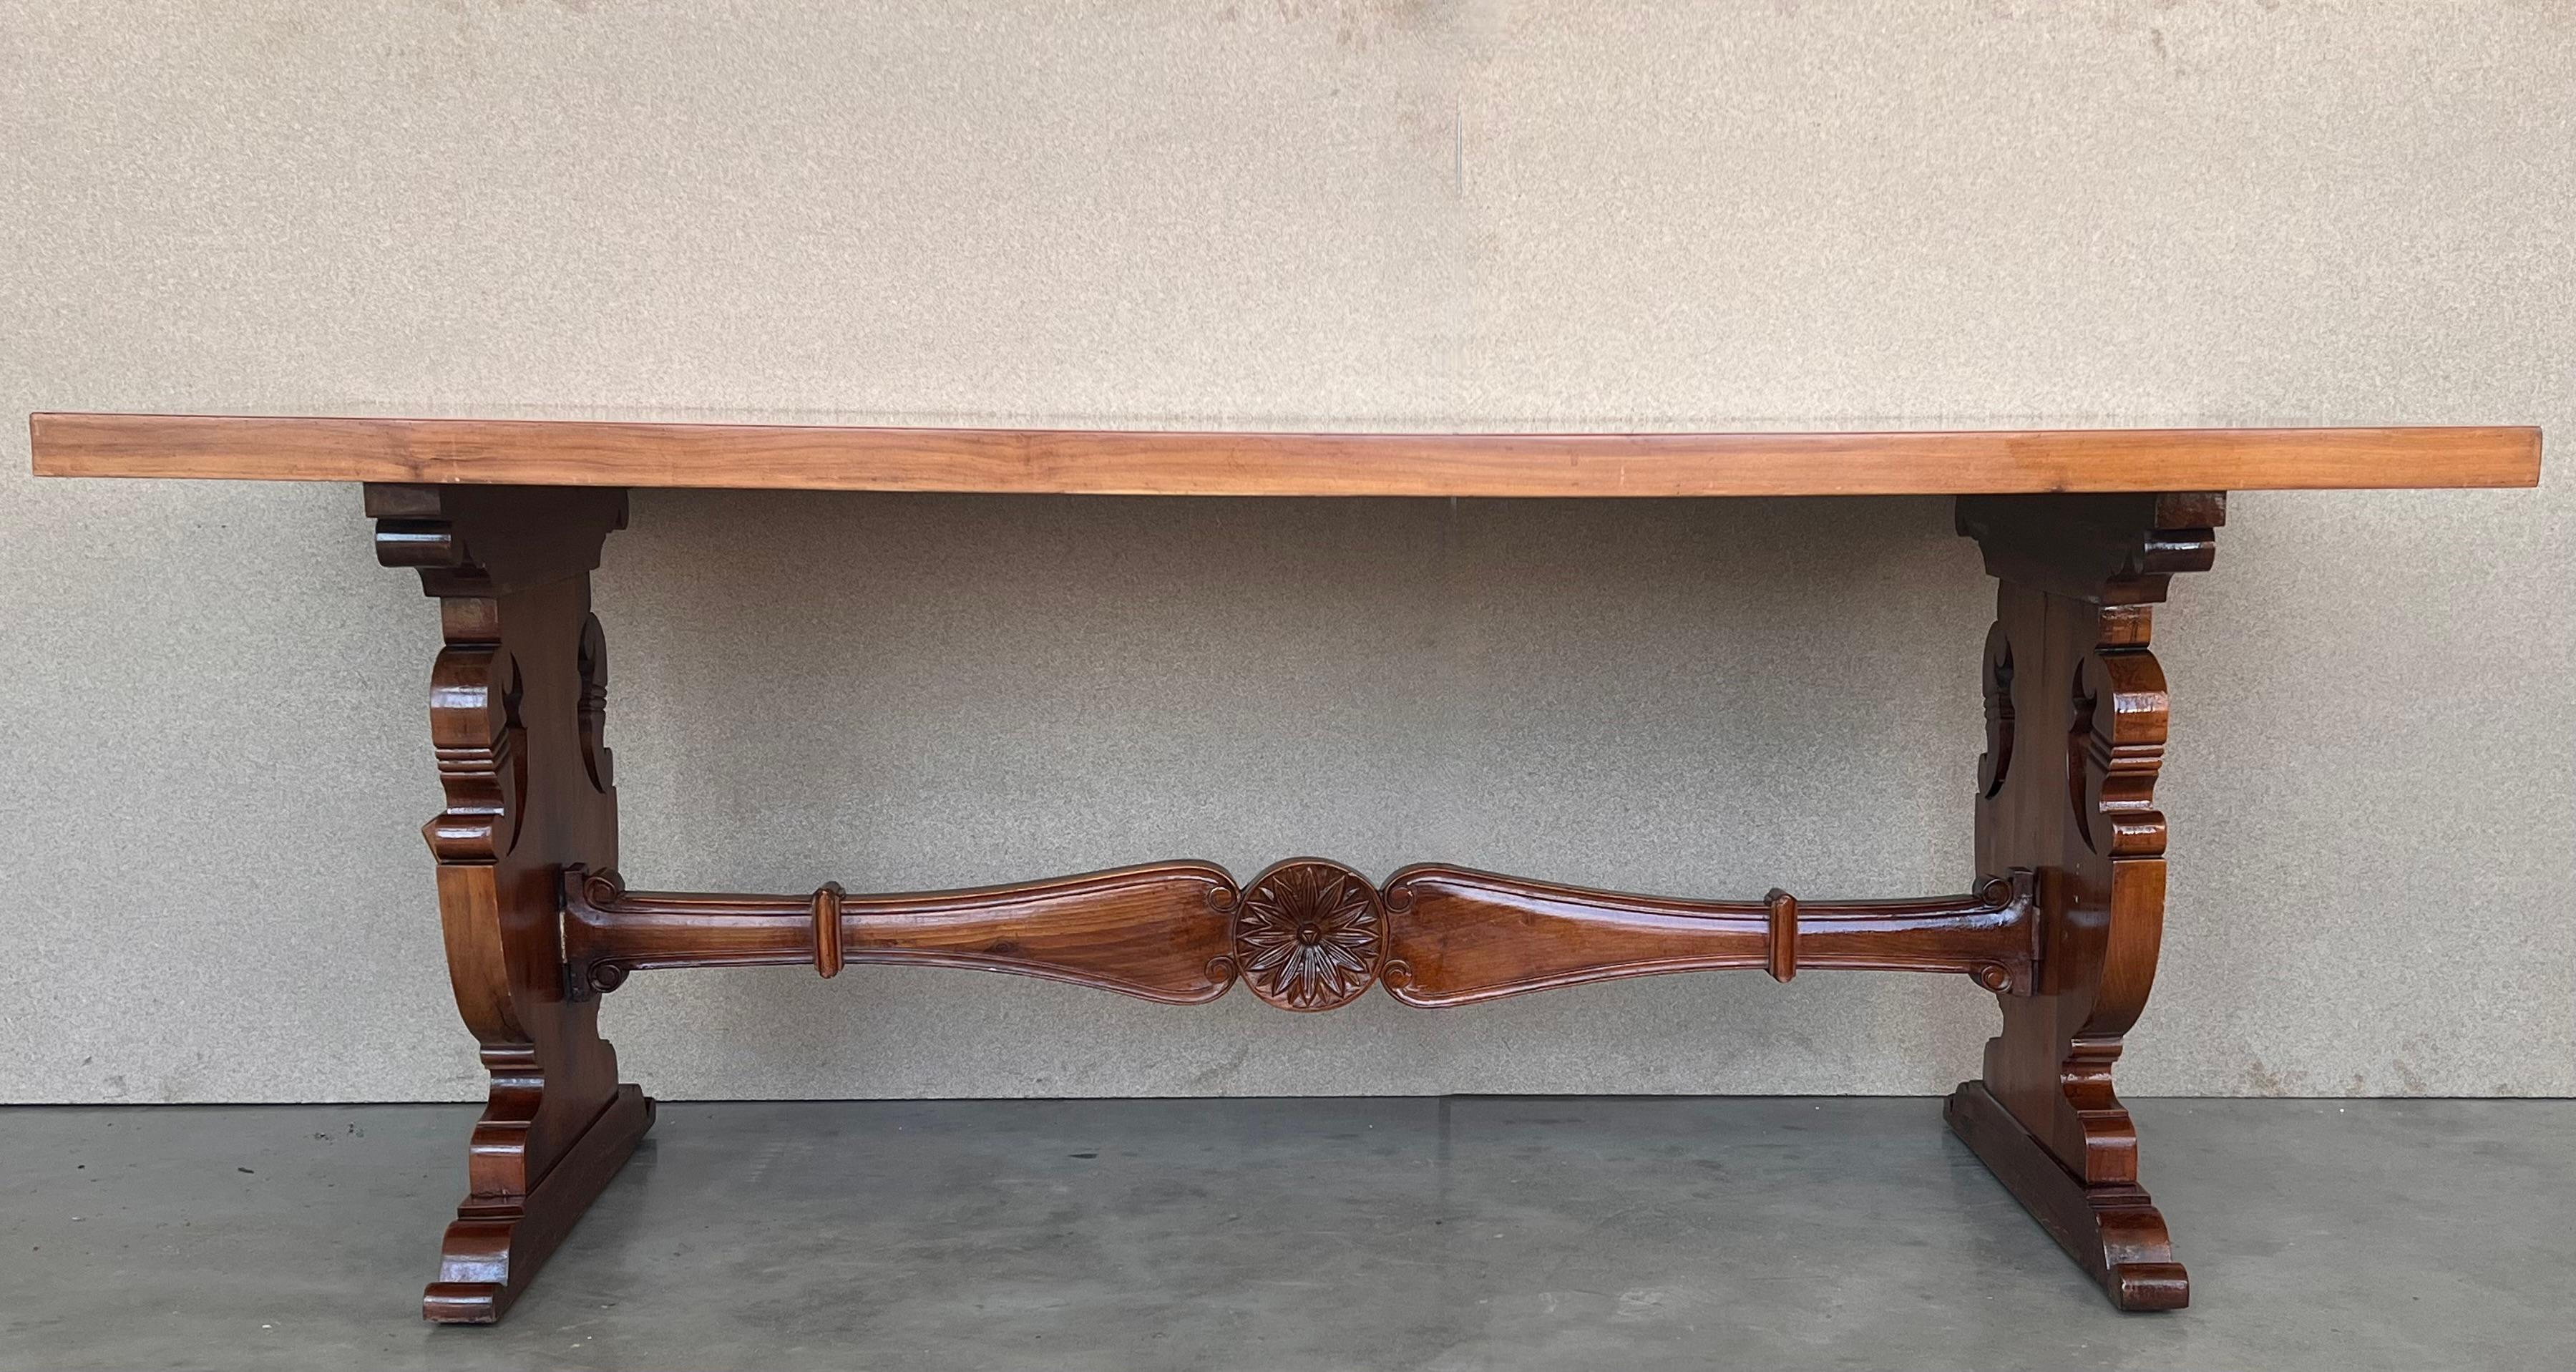 Une table à tréteaux espagnole monumentale du 20e siècle, avec un plateau rectangulaire encadré en noyer massif, reposant sur des pieds lyre classiques sculptés à la main, reliés par une belle civière en bois.

 